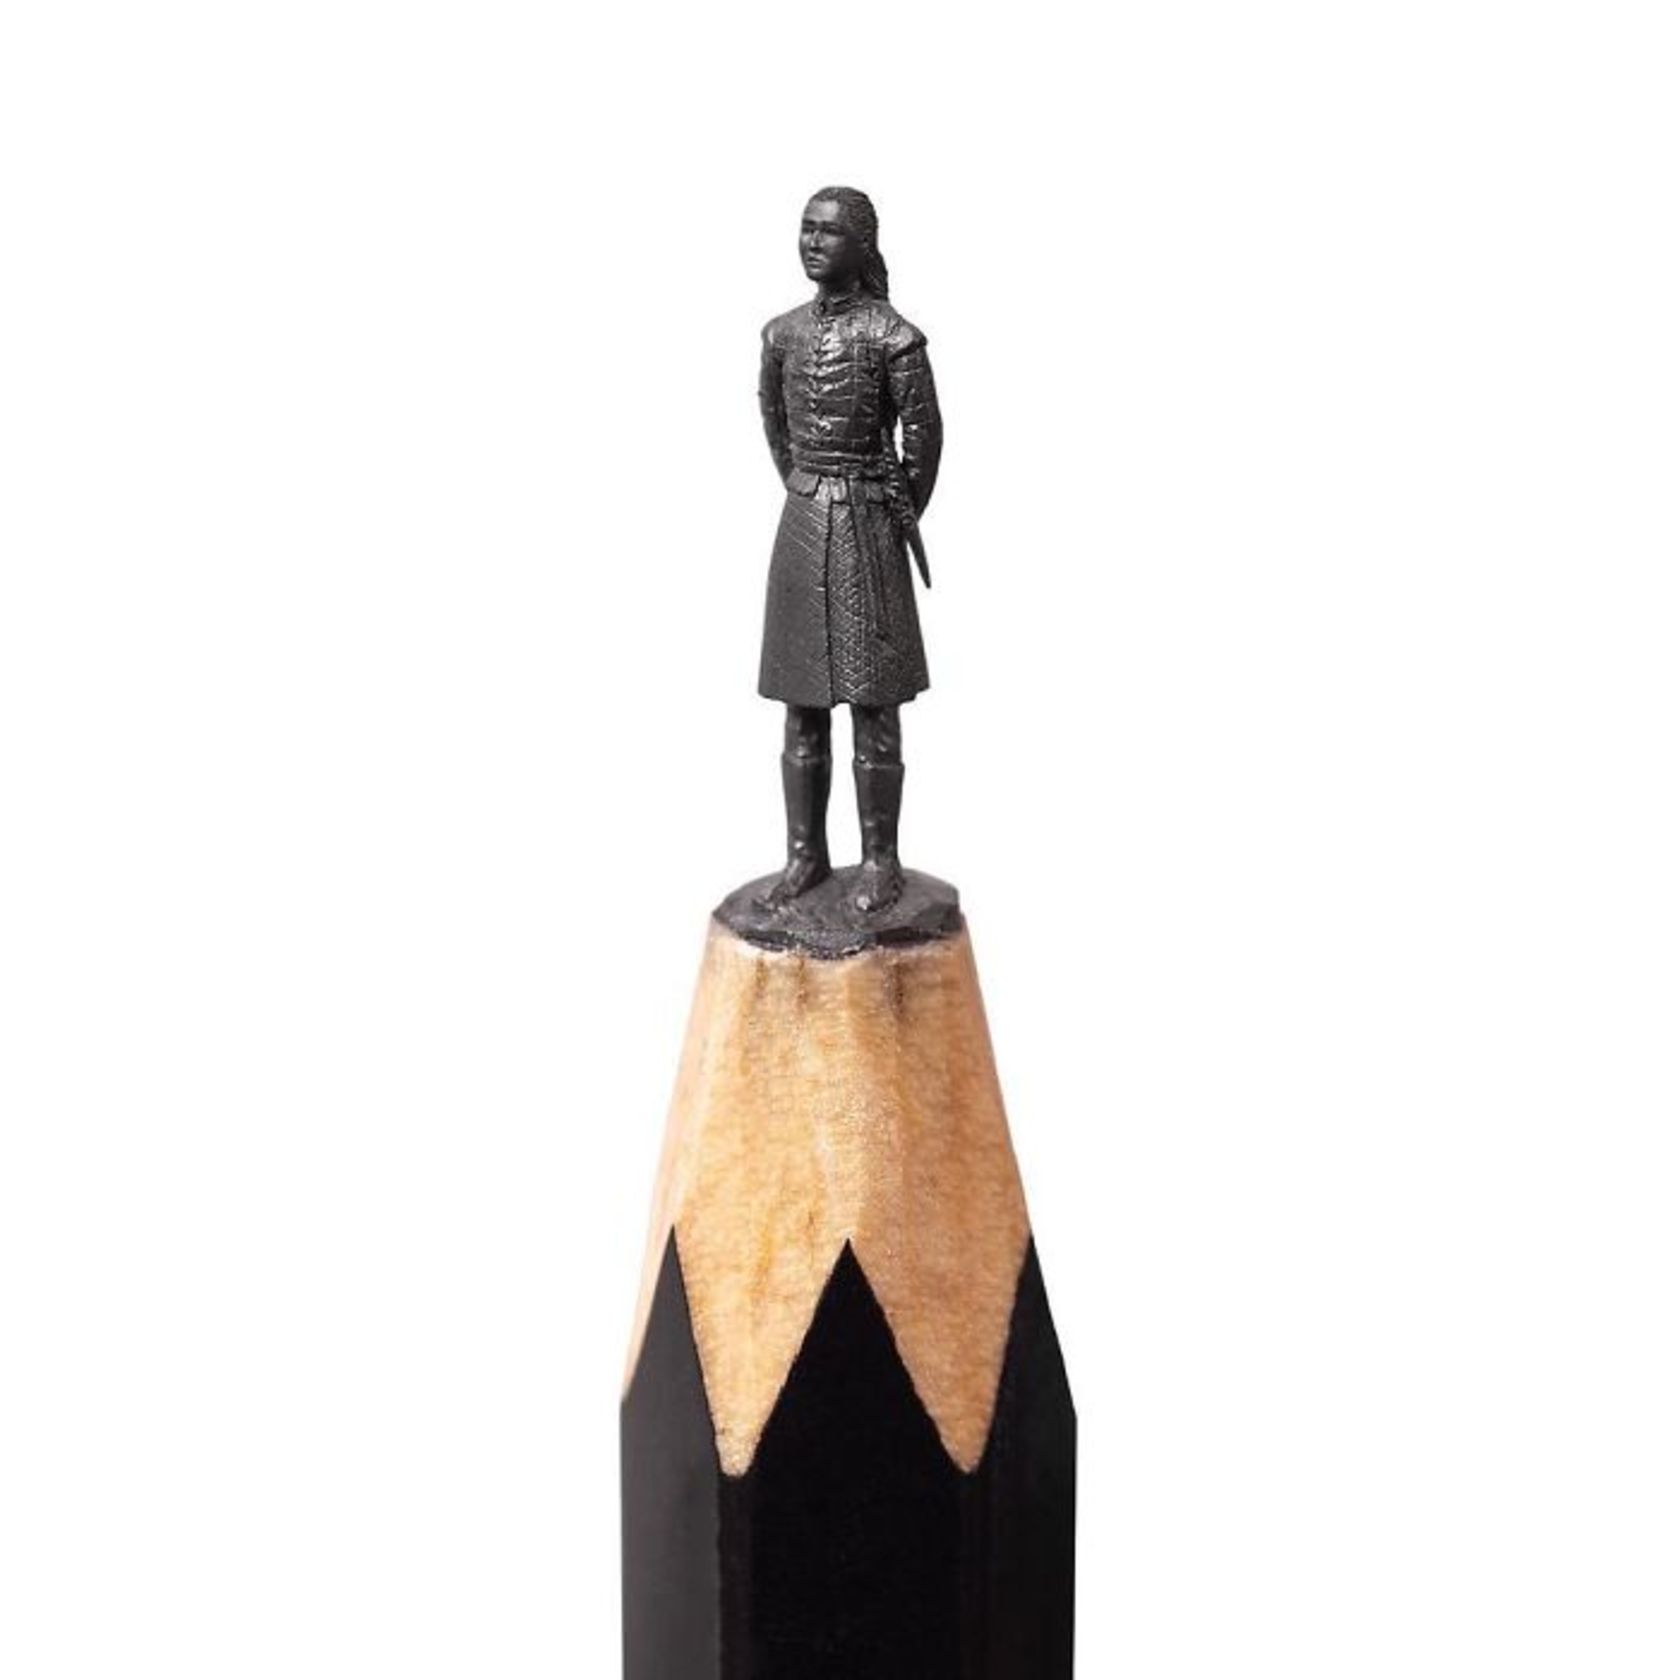 tip-of-pencil-miniature-sculptures-2-661ee7a3a55162c757fc5939